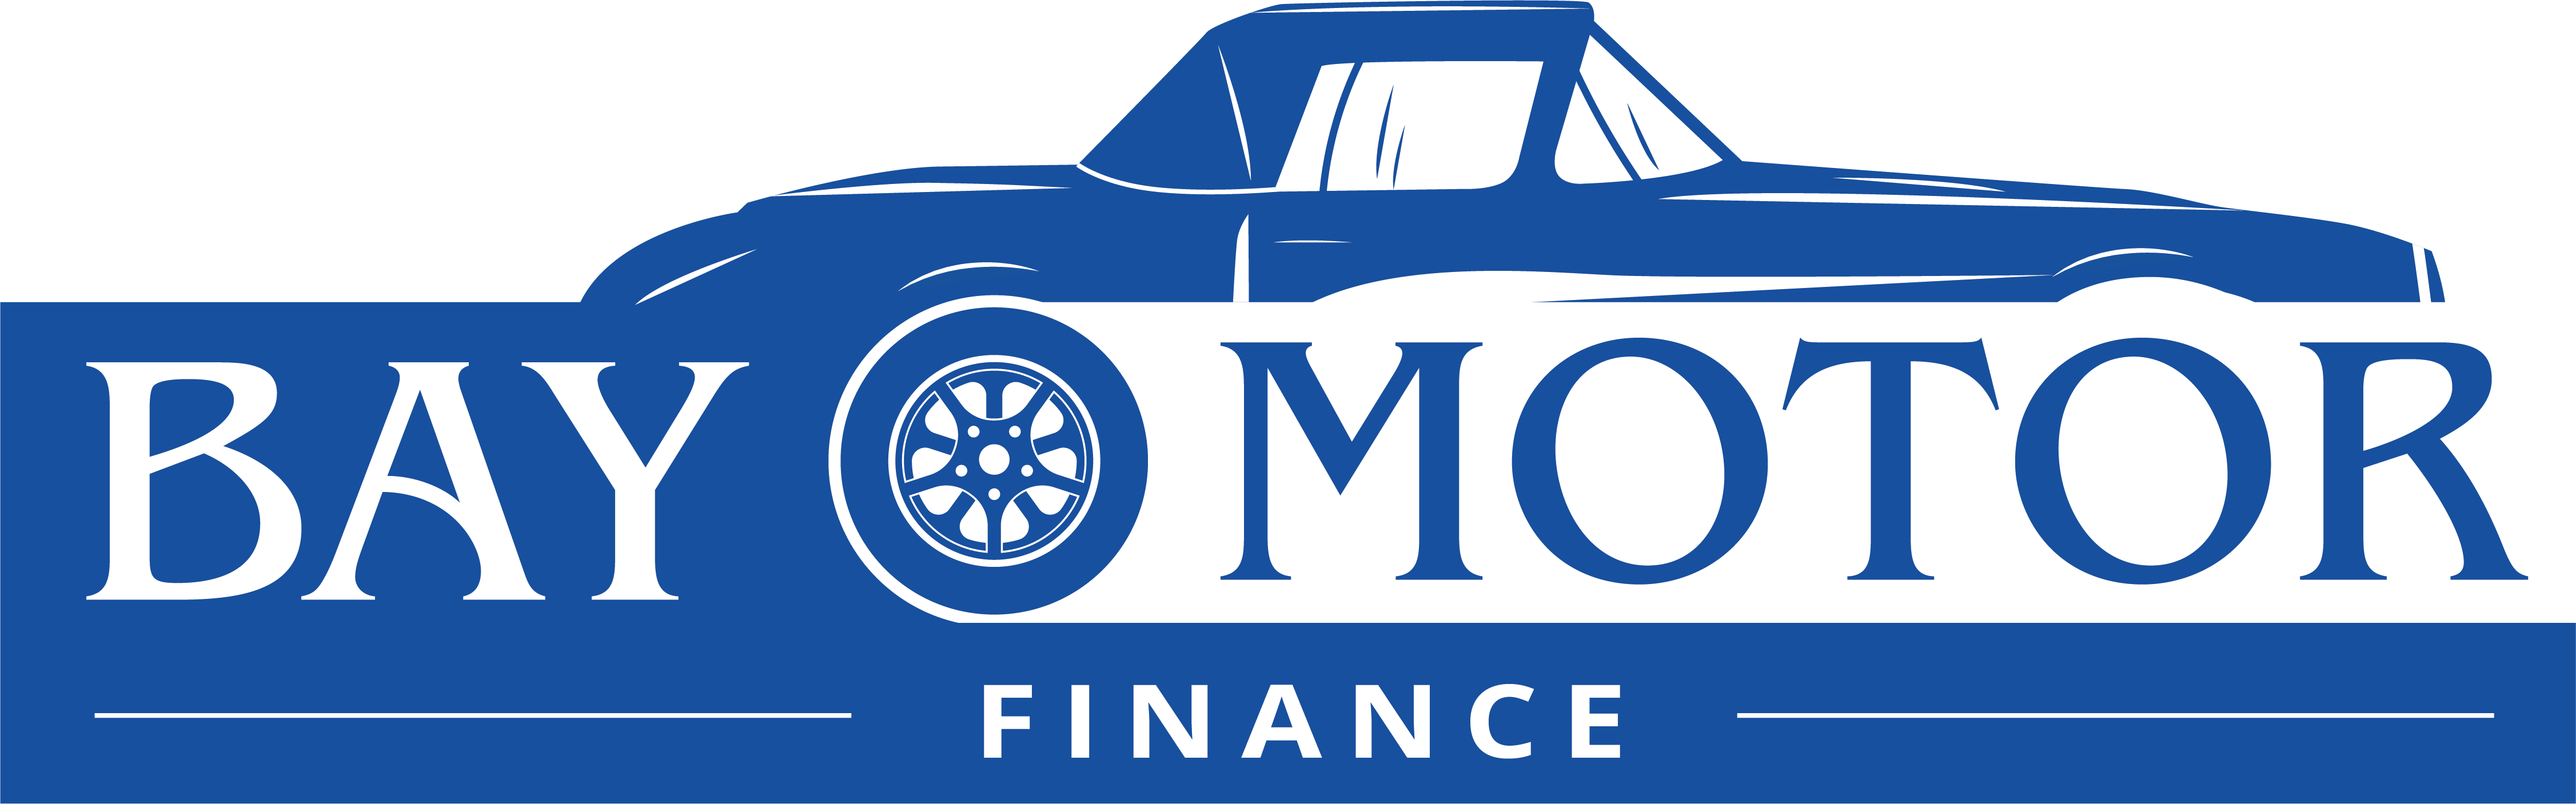 bay motor finance car